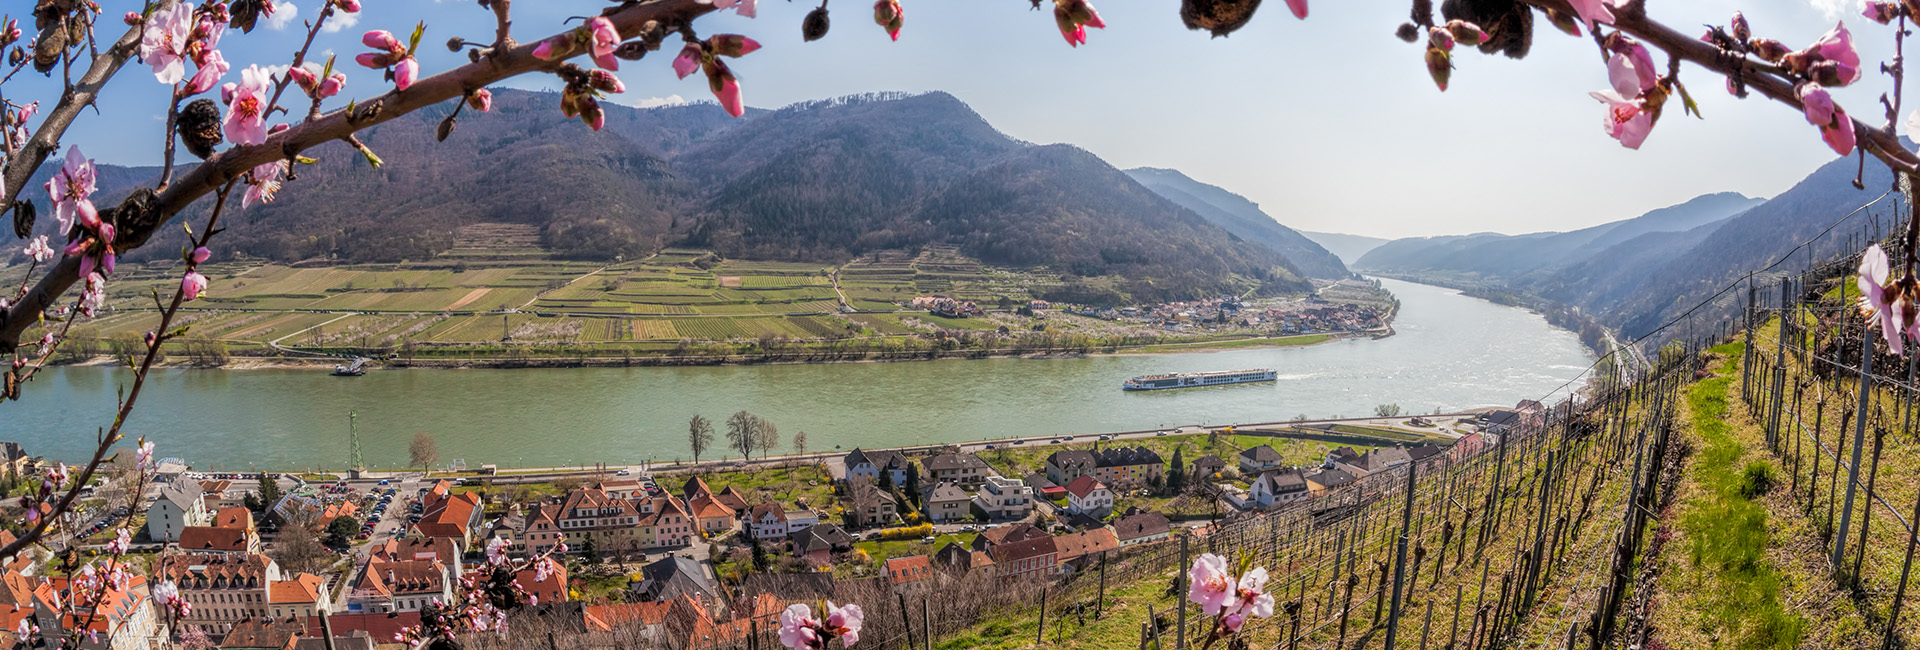 Niederösterreich: Blühende Obstbäume, Donau, Weinberge, Dorf, Hügel